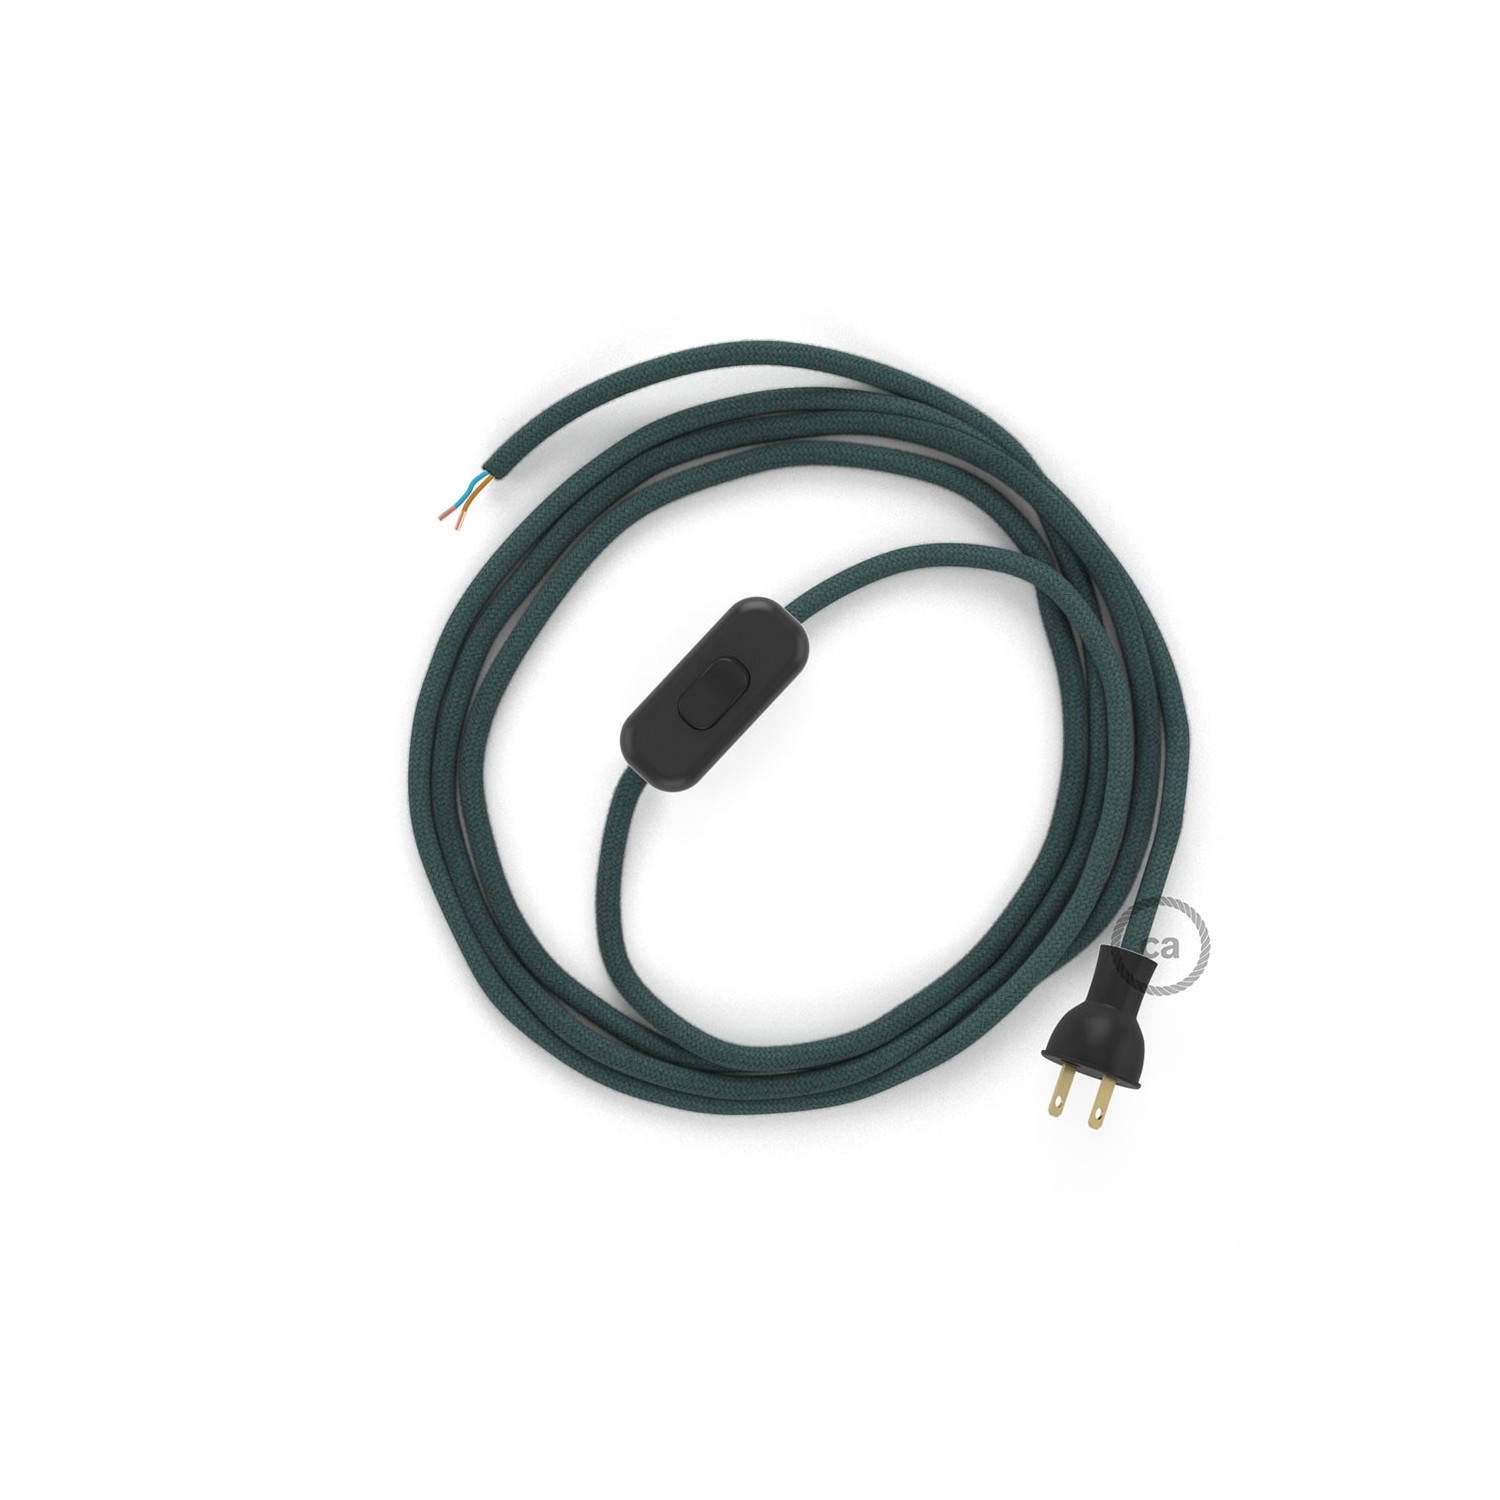 Cableado para lámpara de mesa, cable RC30 Algodón Gris Piedra 1,8 m. Elige el color de la clavija y del interruptor!